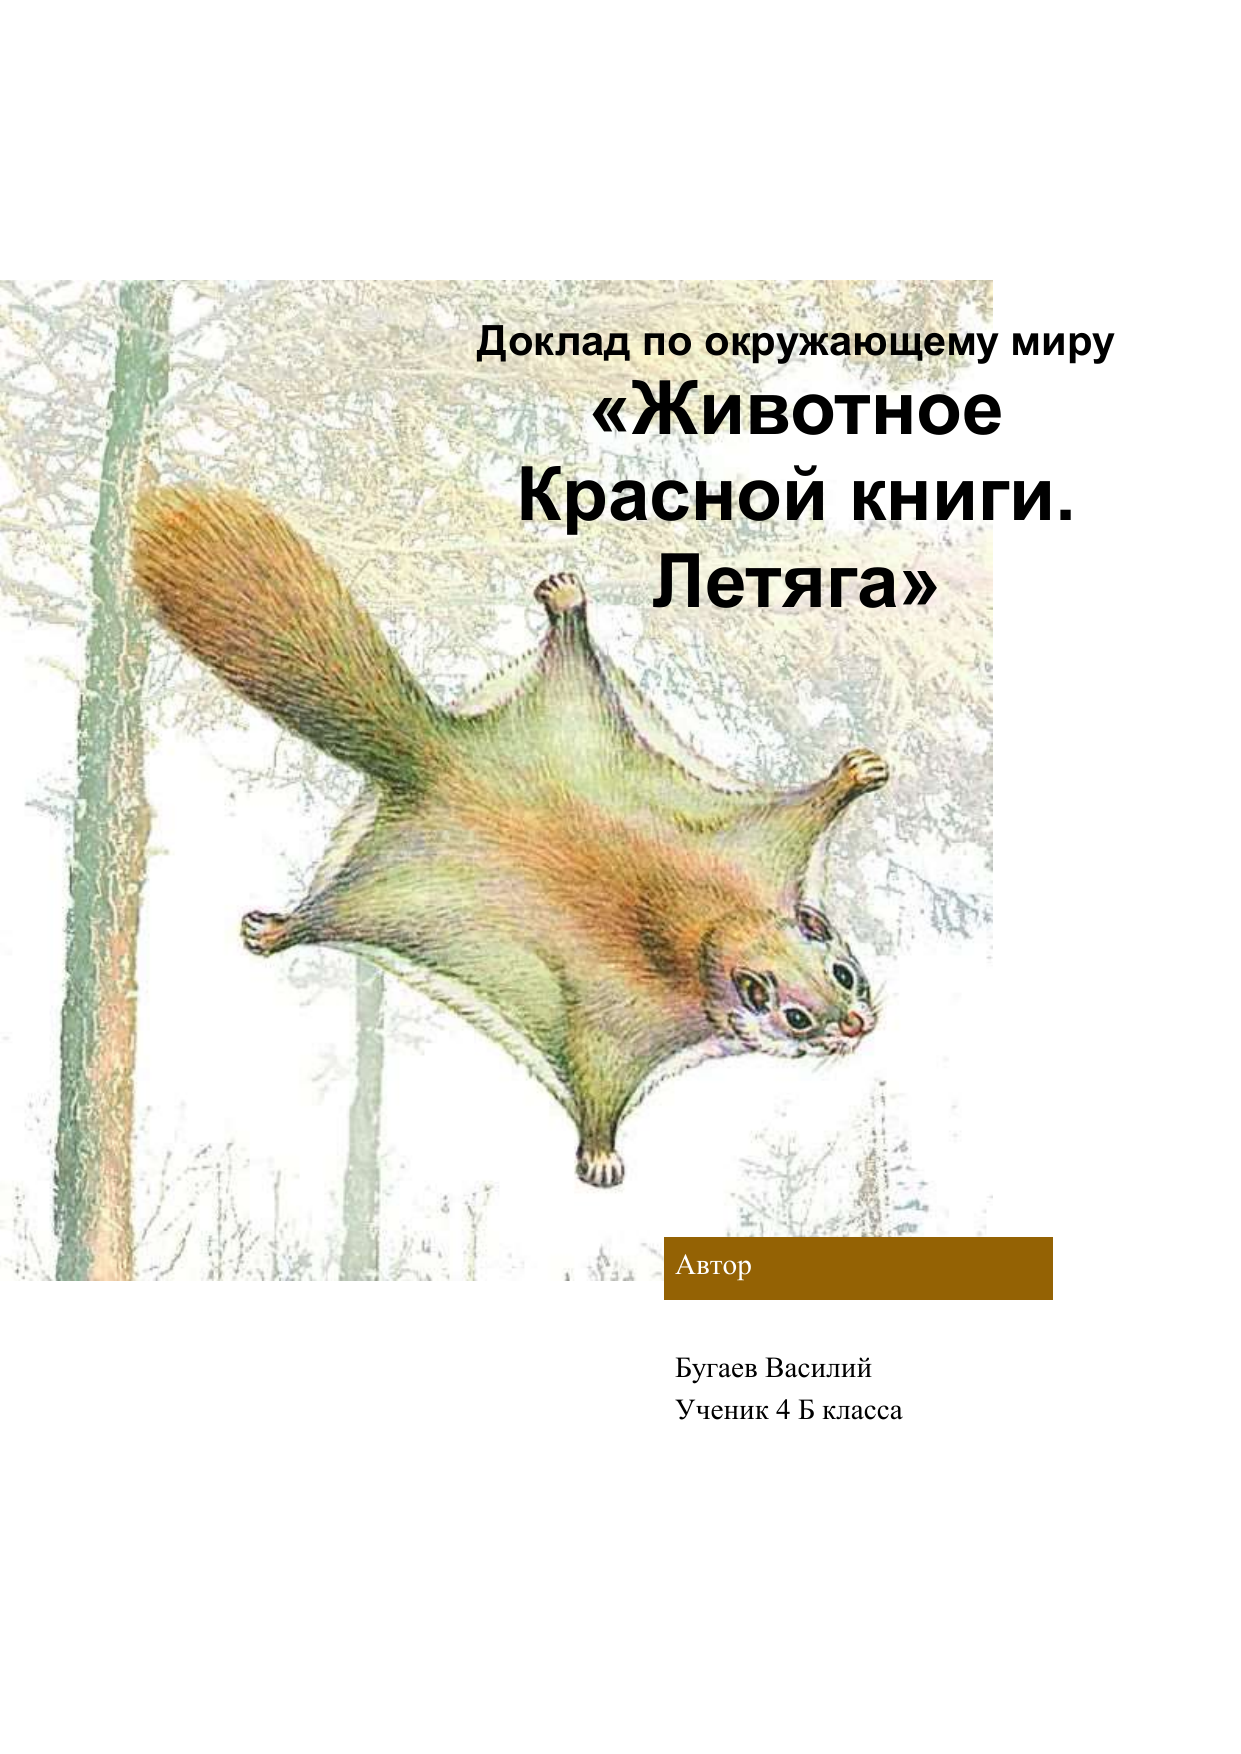 Доклад про животное из красной книги